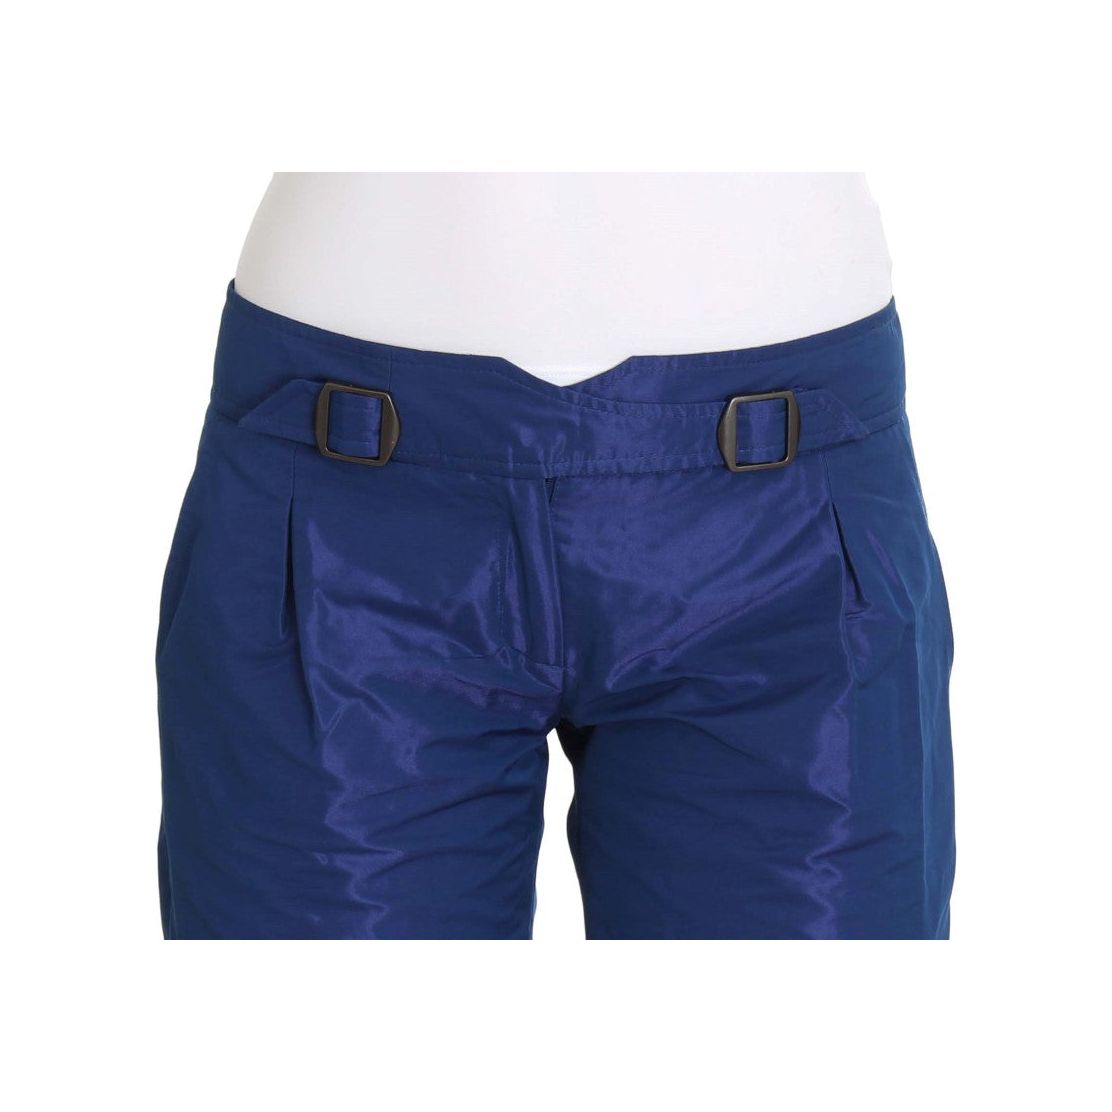 Ermanno Scervino | Blue Above Knees Bermuda Shorts | McRichard Designer Brands